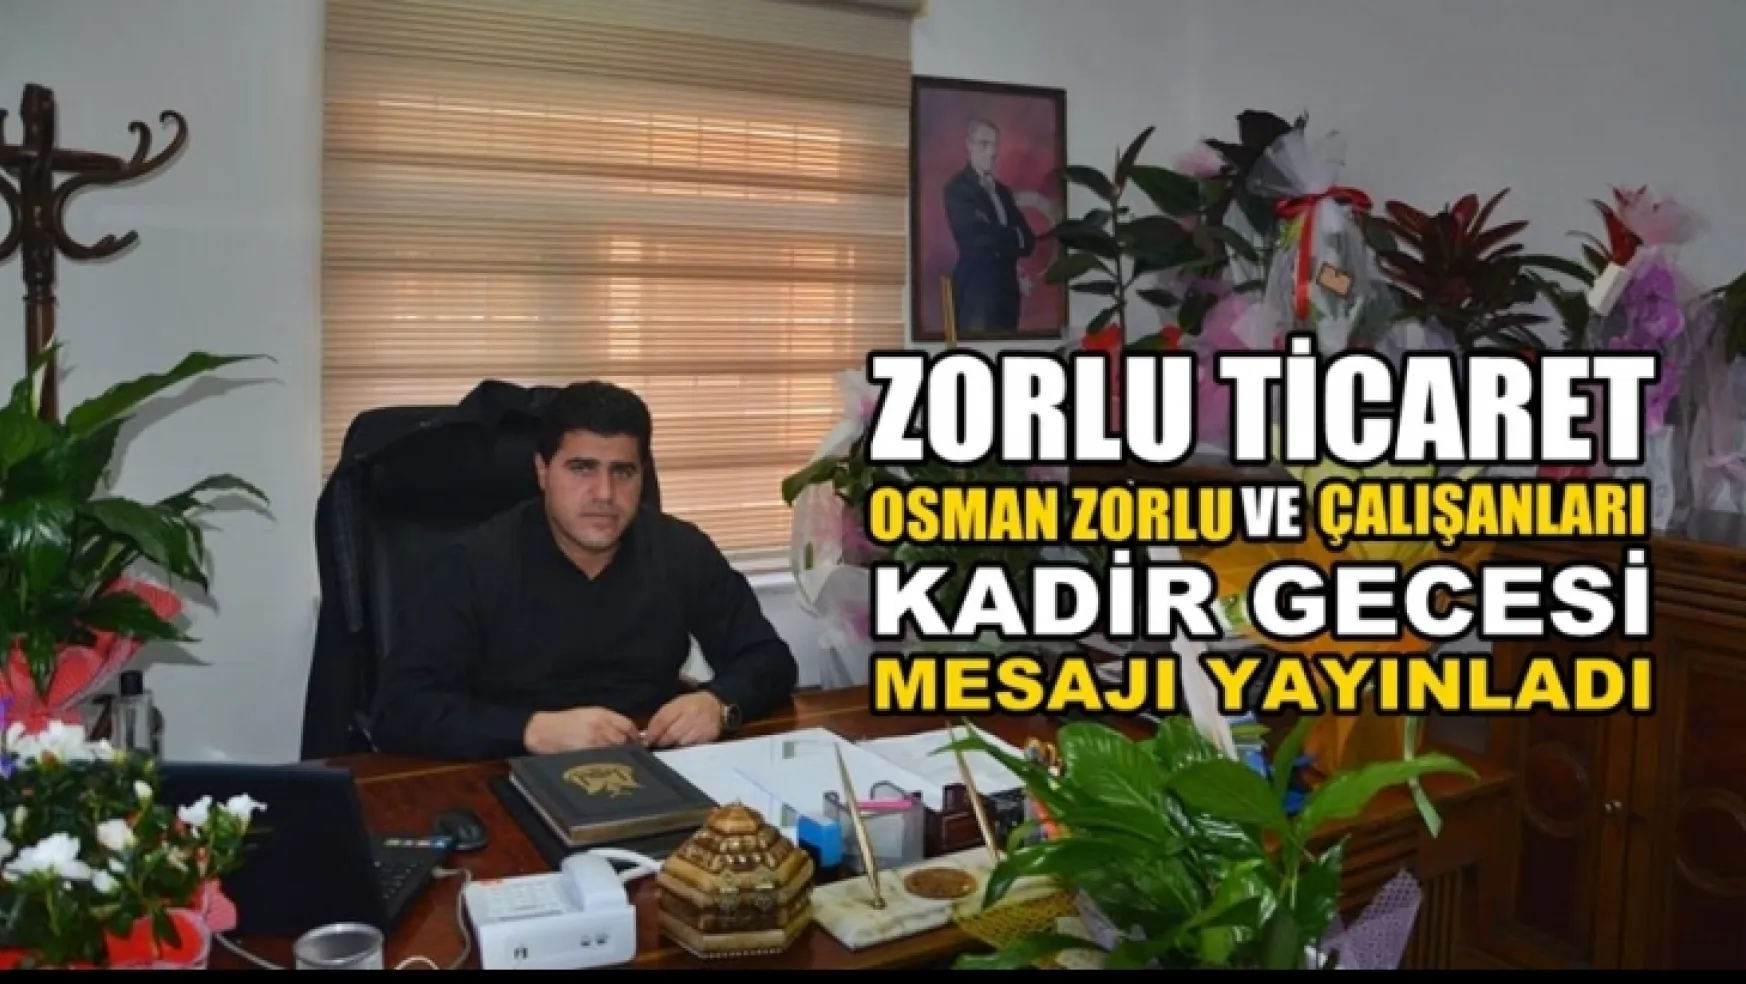 Osman Zorlu Kadir gecesi mesajı yayınladı